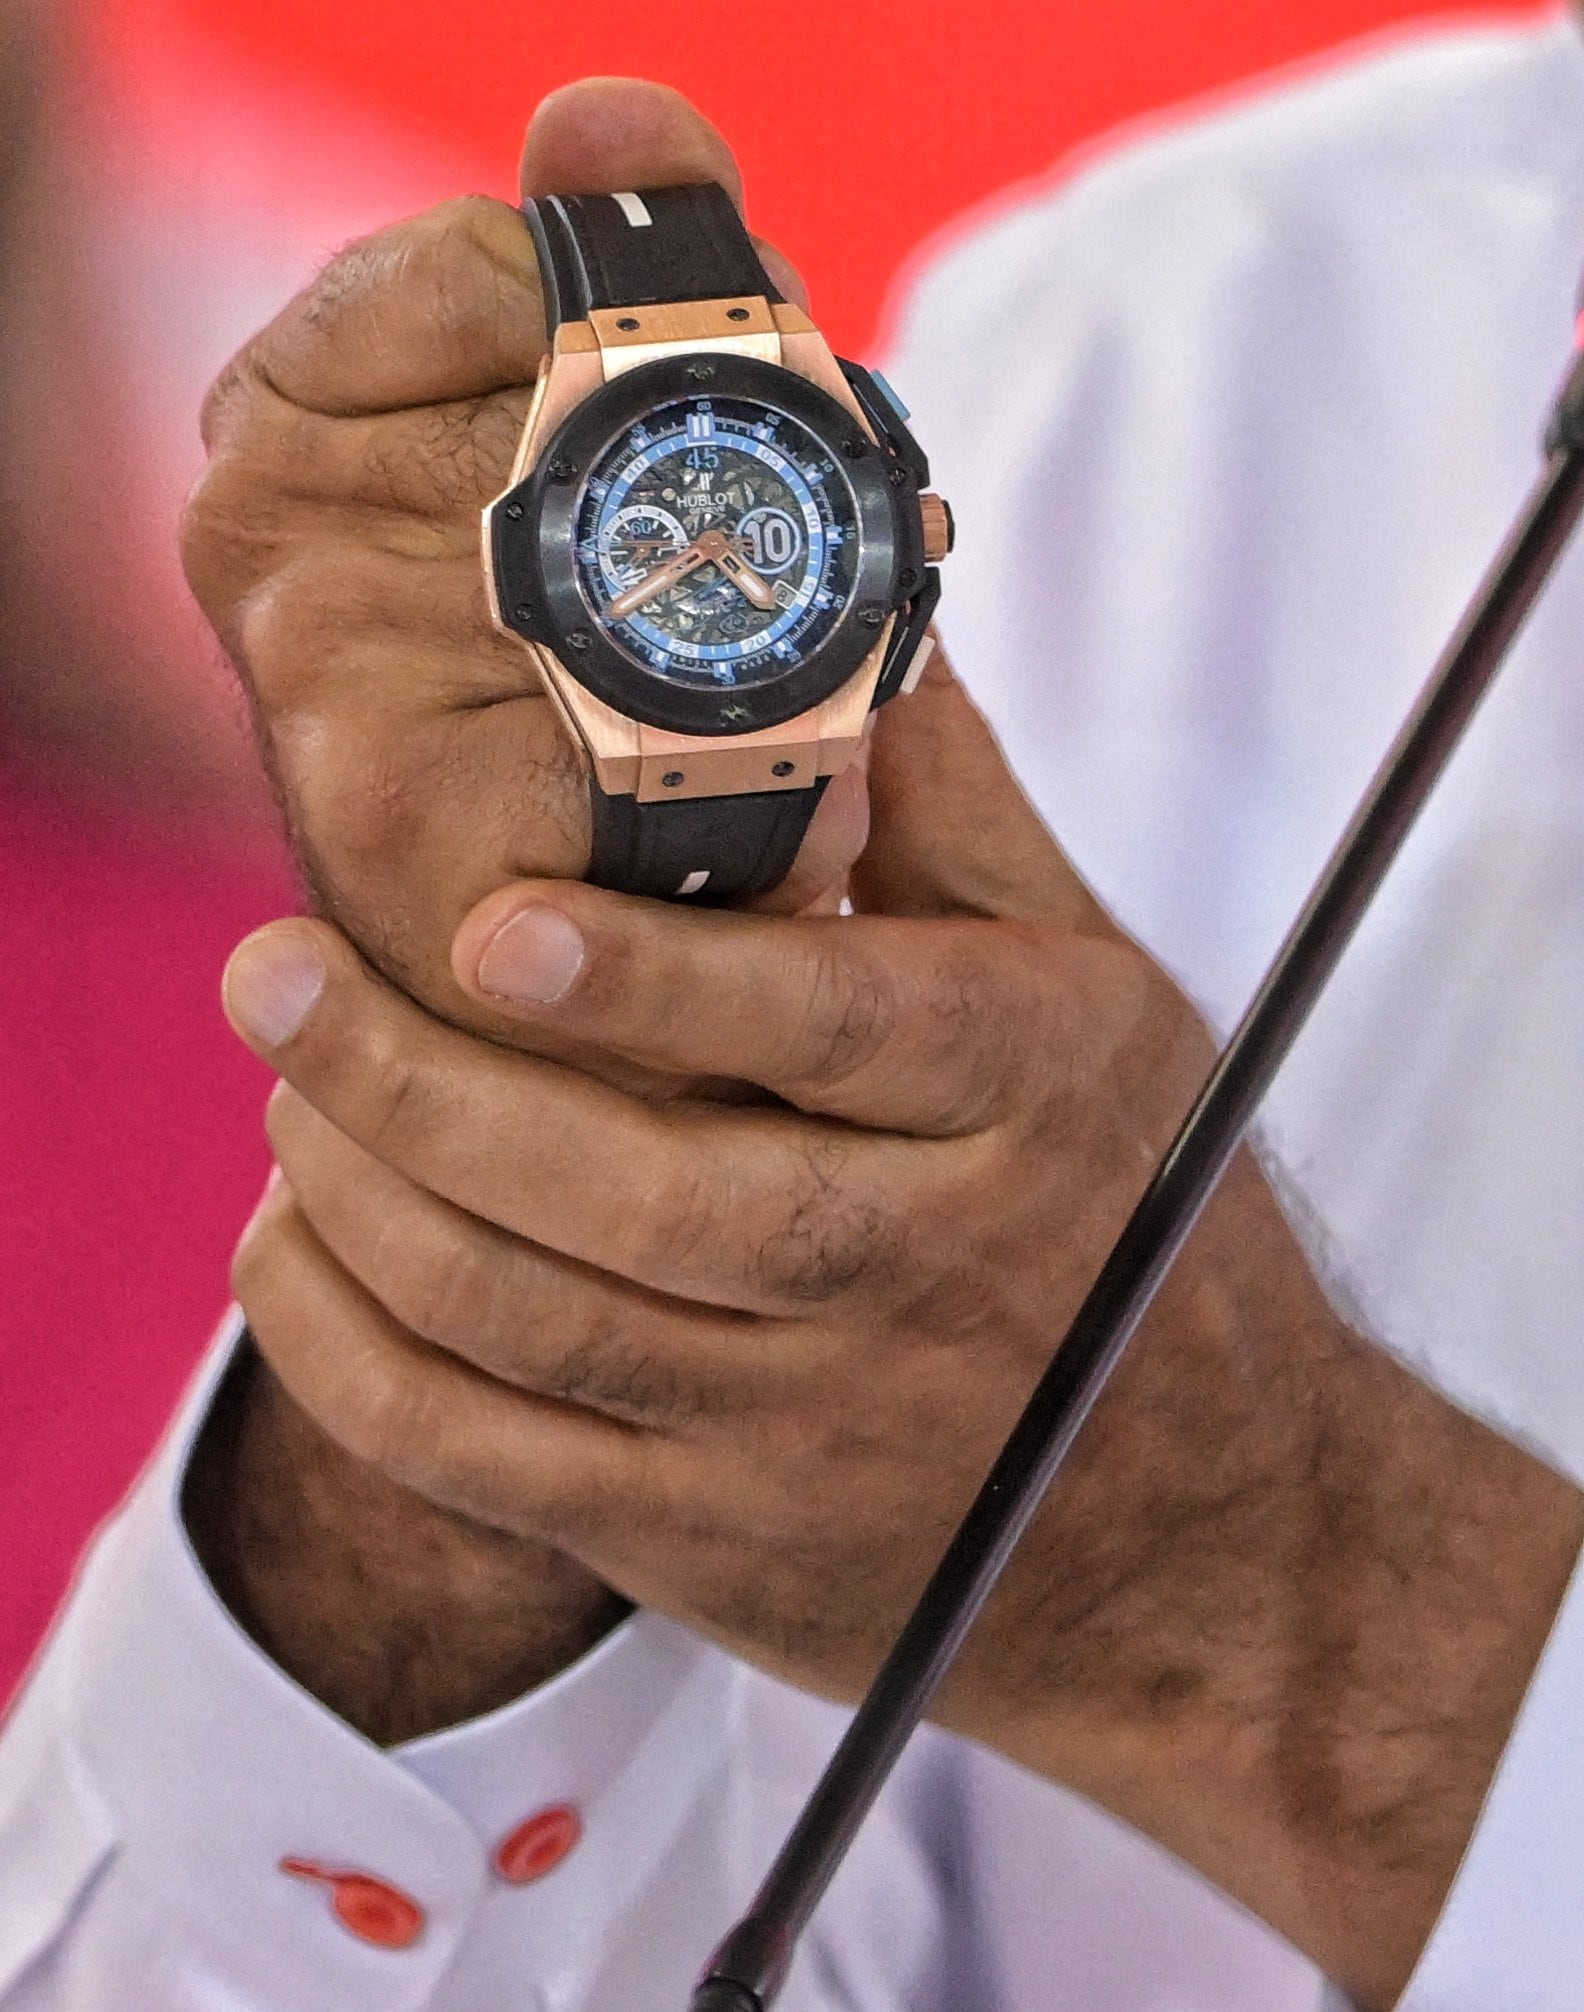 El presidente Nicolás Maduro muestra un reloj que le regaló Diego Maradona durante una cumbre en Caracas.  (JUAN BARRETO / AFP)